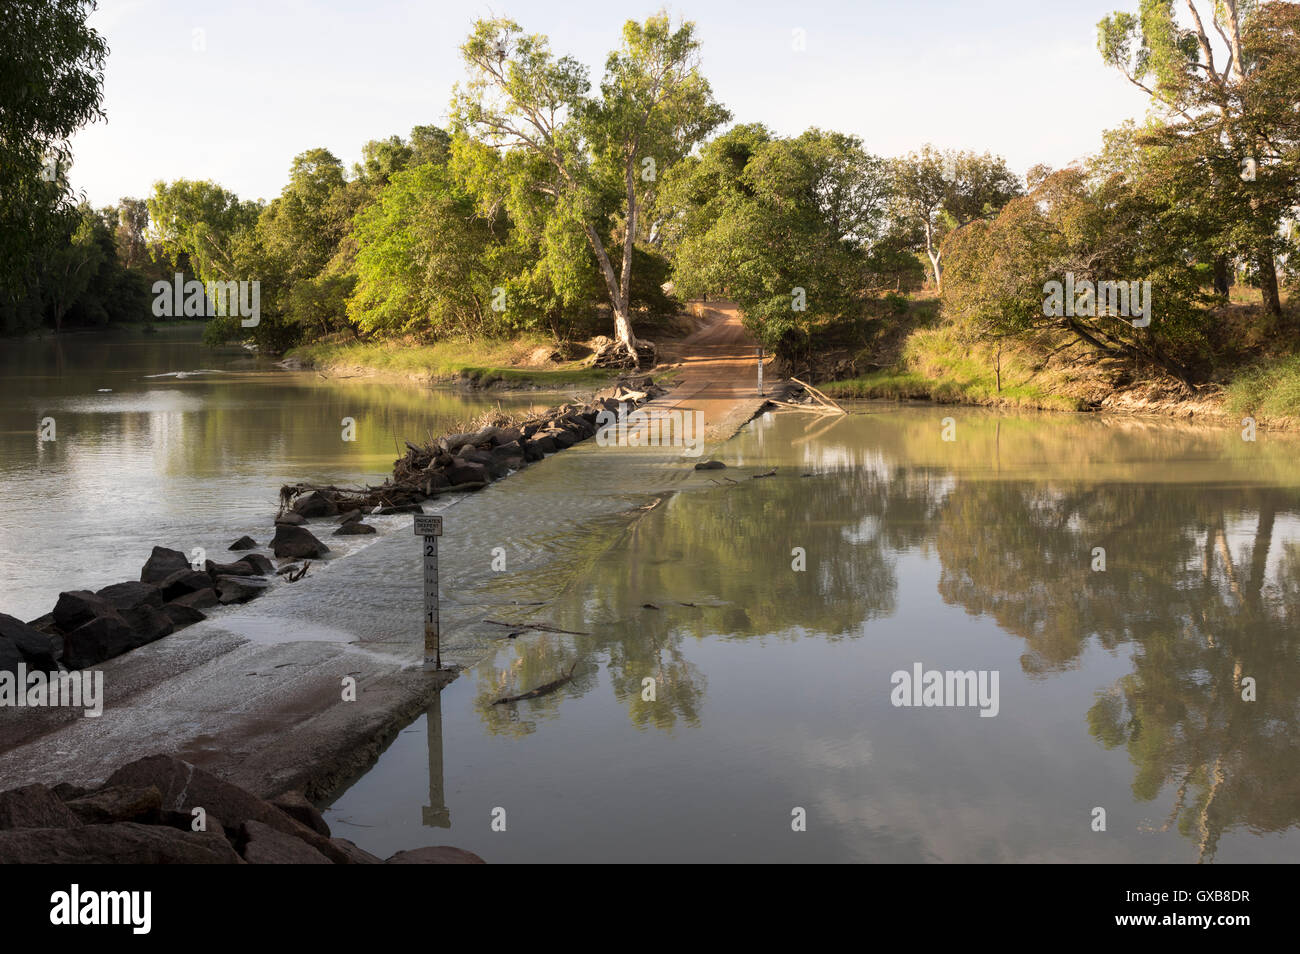 Cahill's Crossing sur l'Est de la rivière Alligator entre le Parc National de Kakadu et la terre d'Arnhem, dans le Territoire du Nord, Australie. Banque D'Images